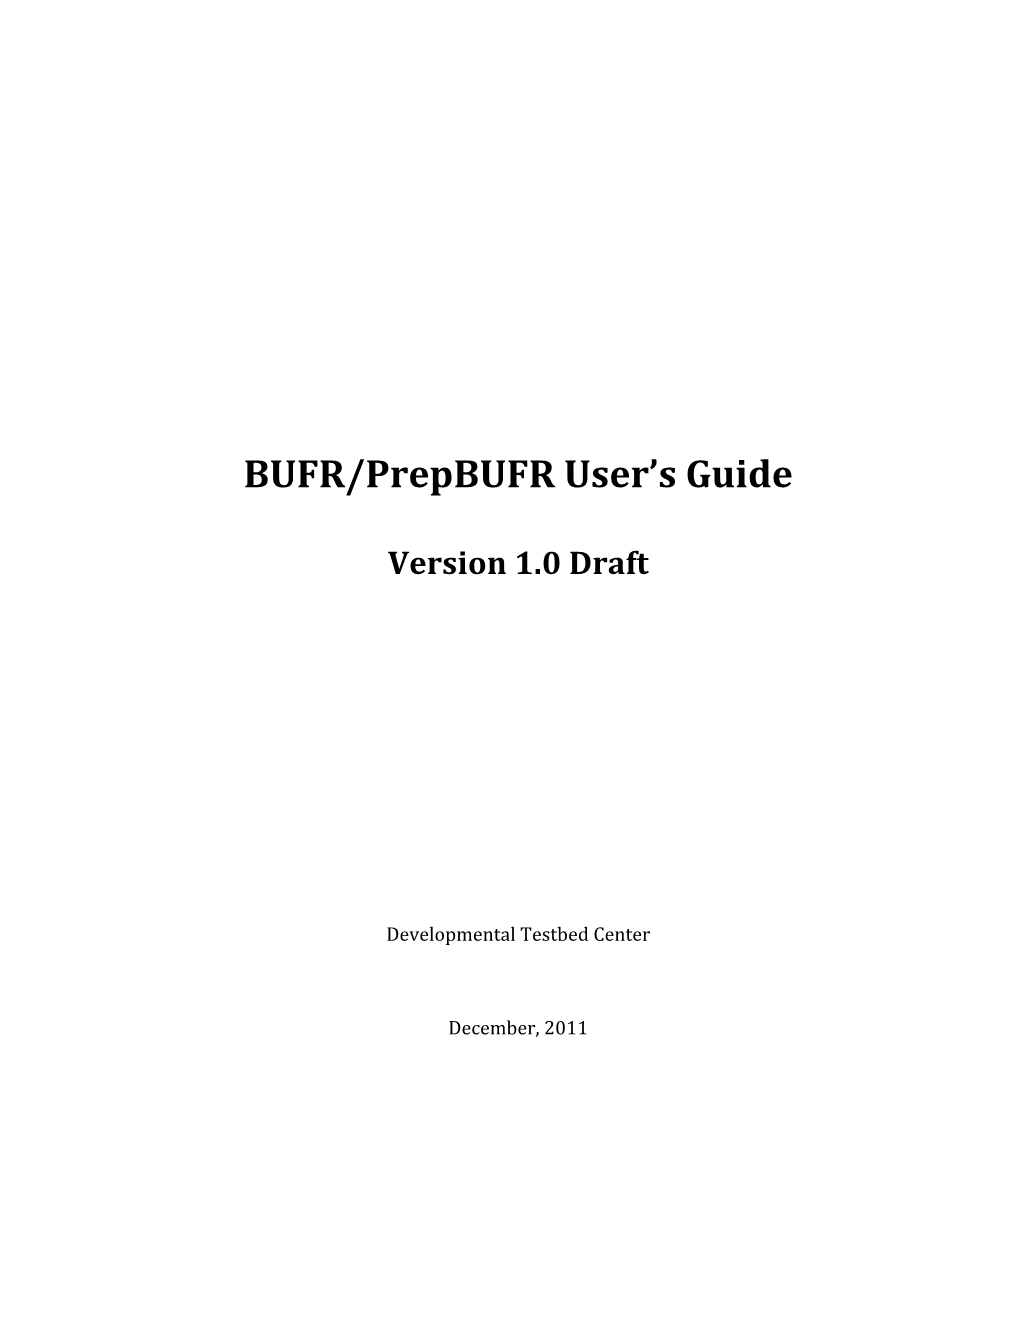 BUFR/Prepbufr User's Guide